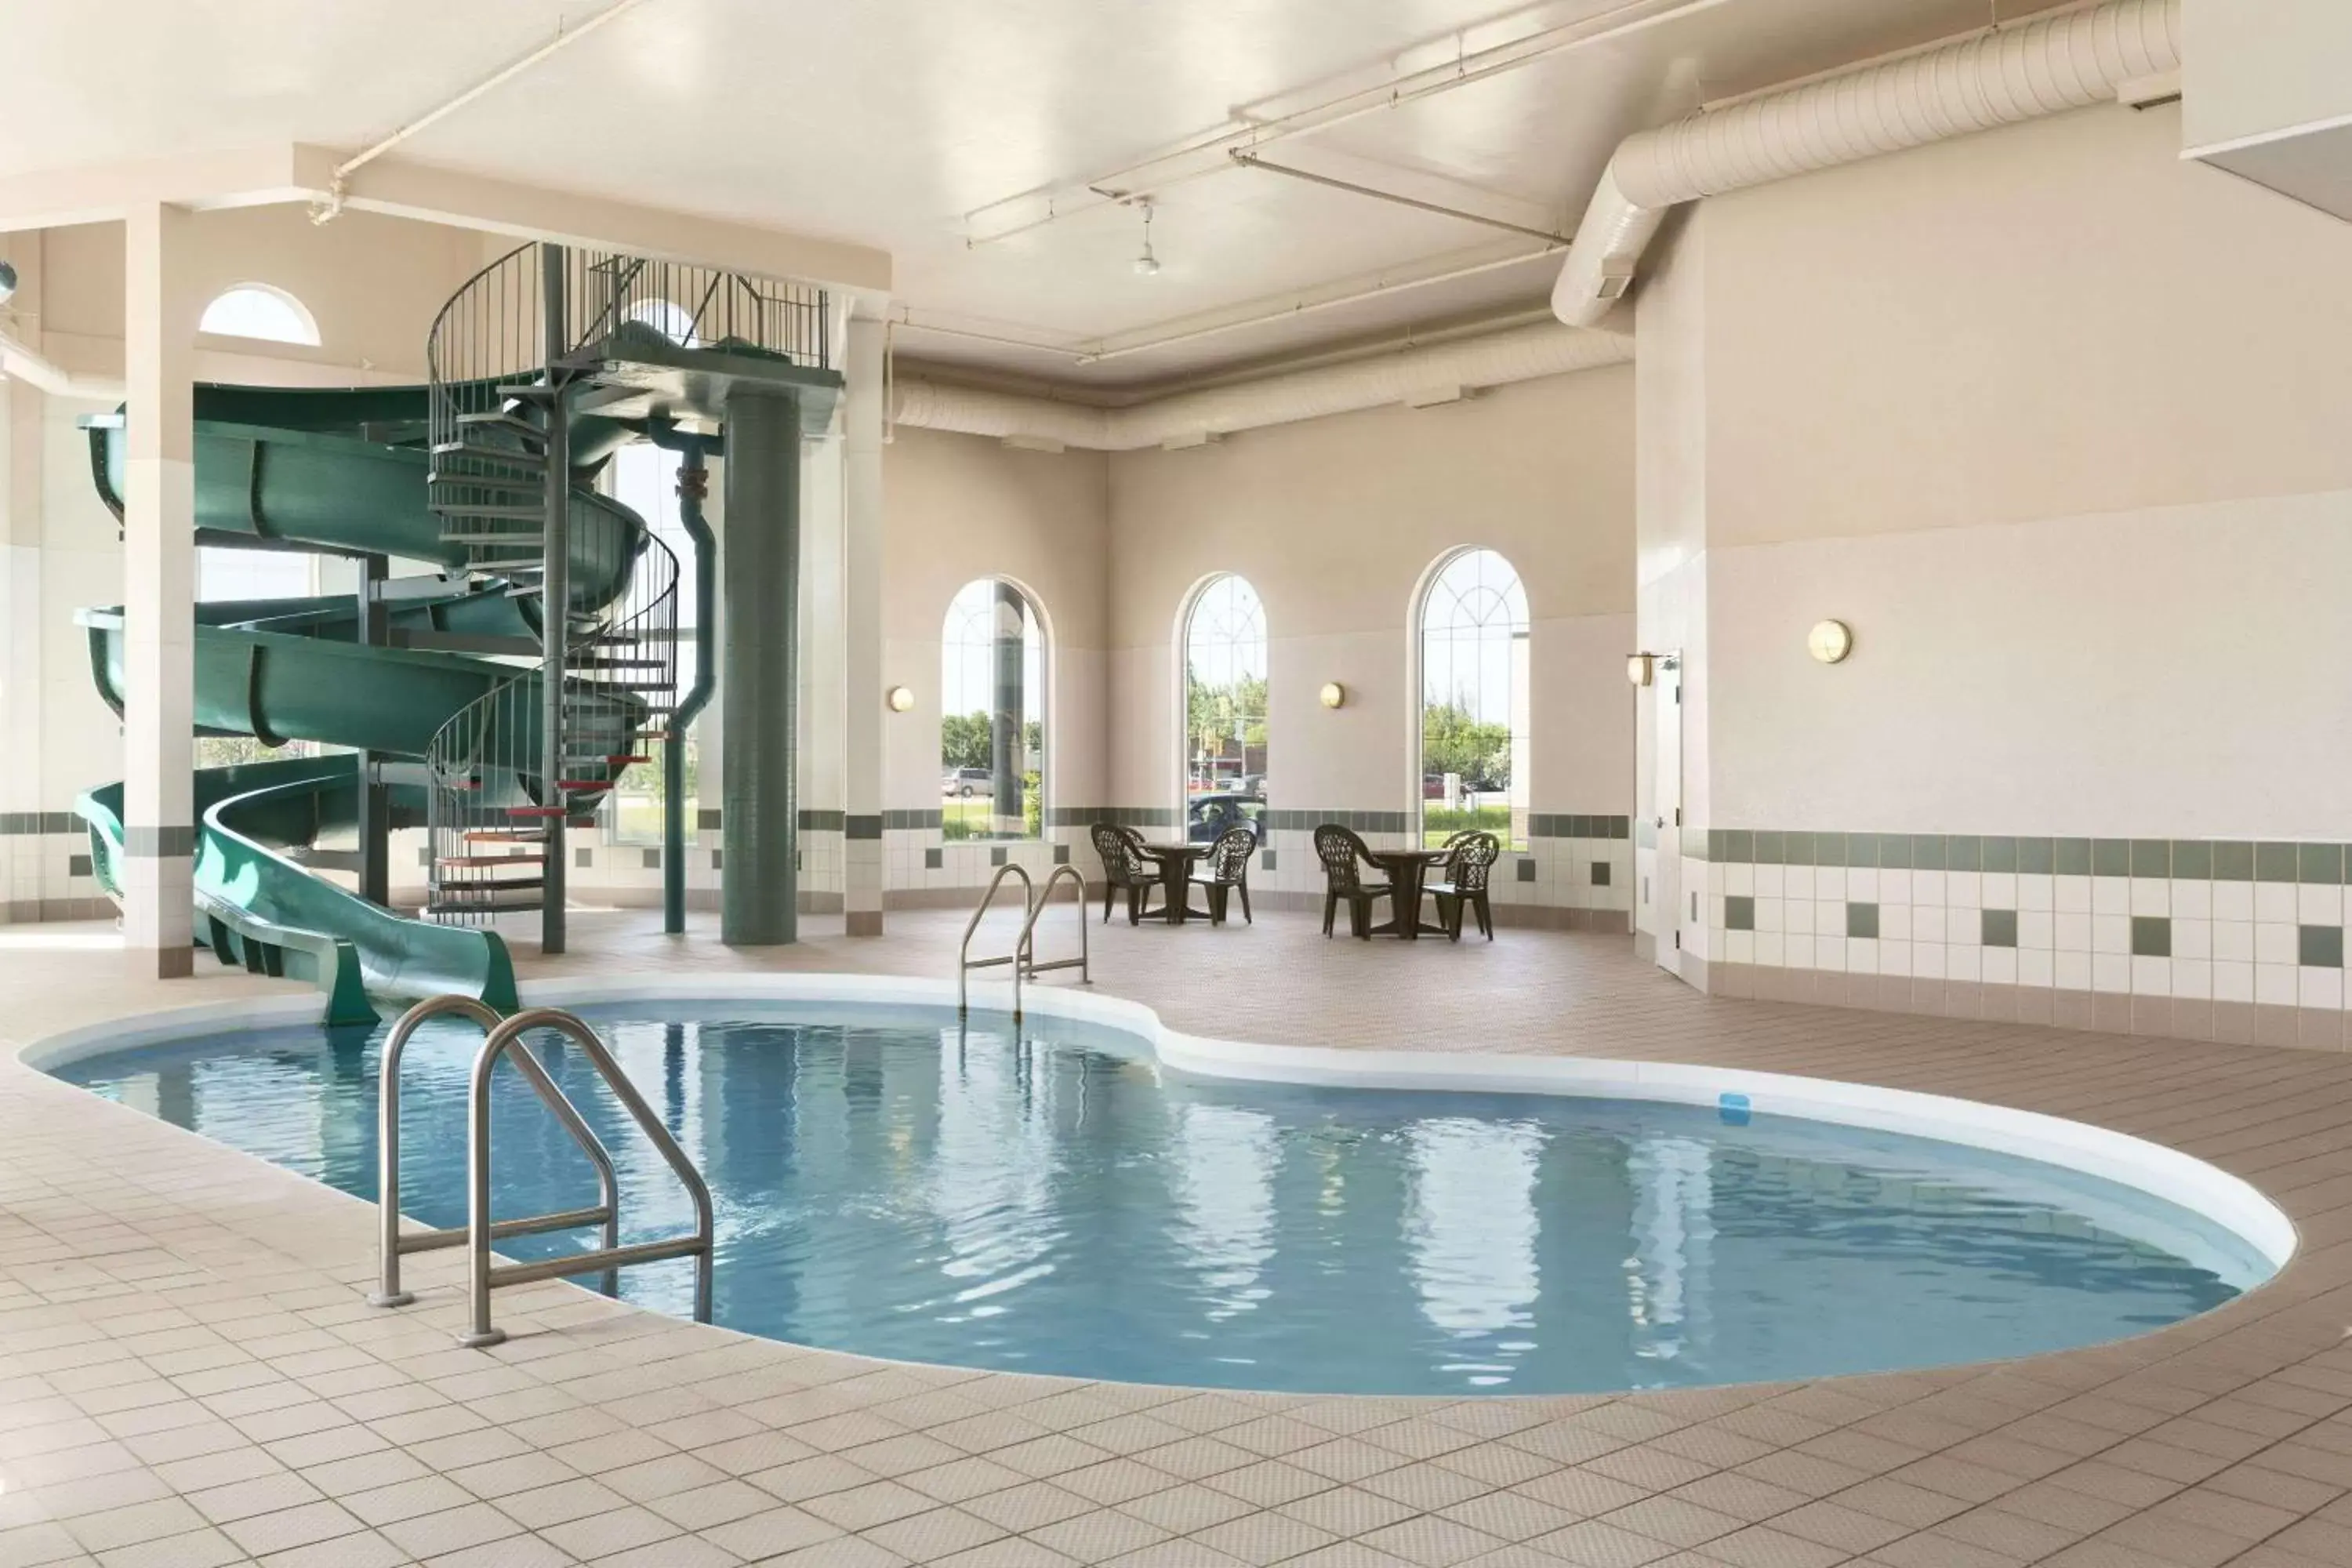 On site, Swimming Pool in Days Inn & Suites by Wyndham Winkler